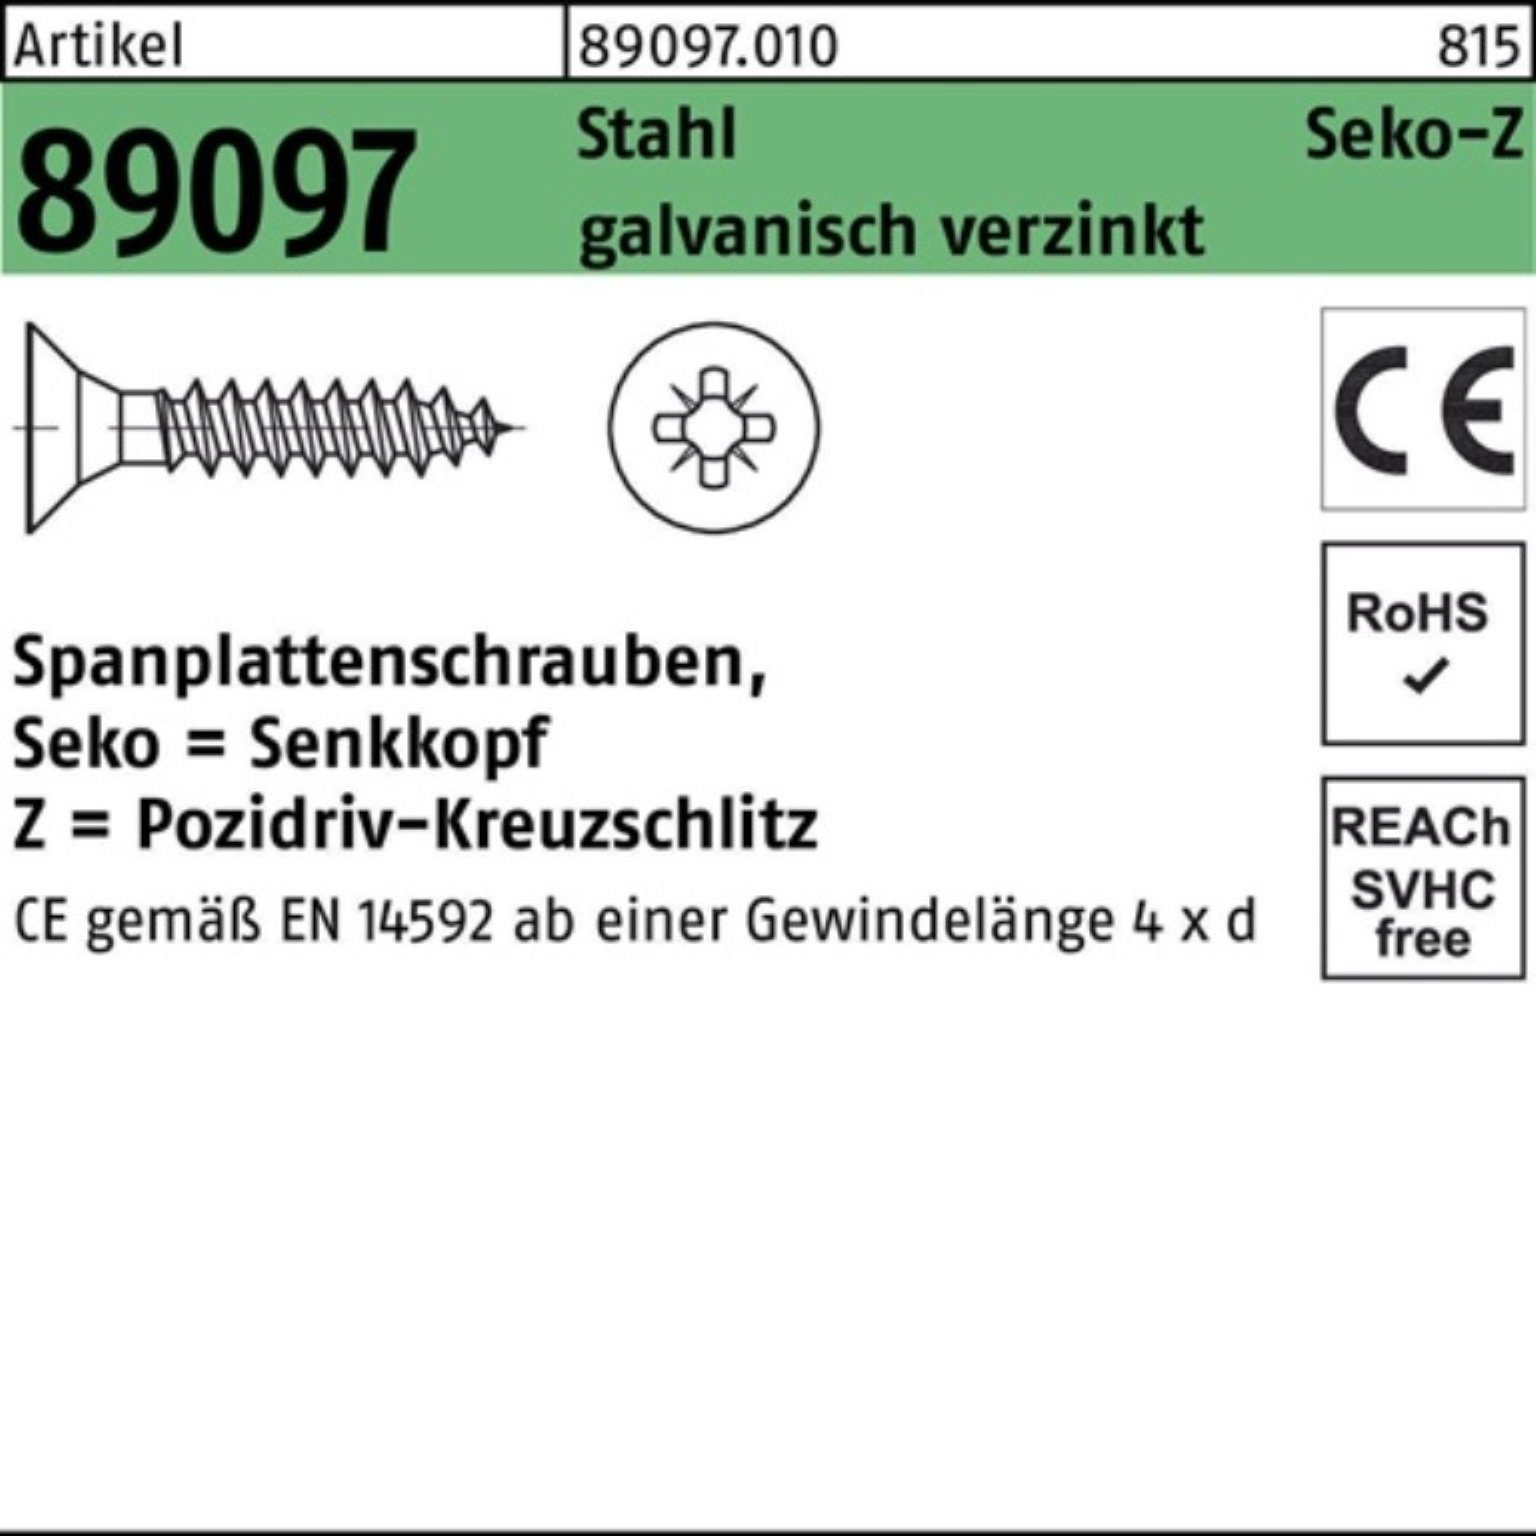 Spanplattenschraube VG galv.ve Pack Reyher 6x70-Z SEKO Spanplattenschraube 200er Stahl R PZ 89097